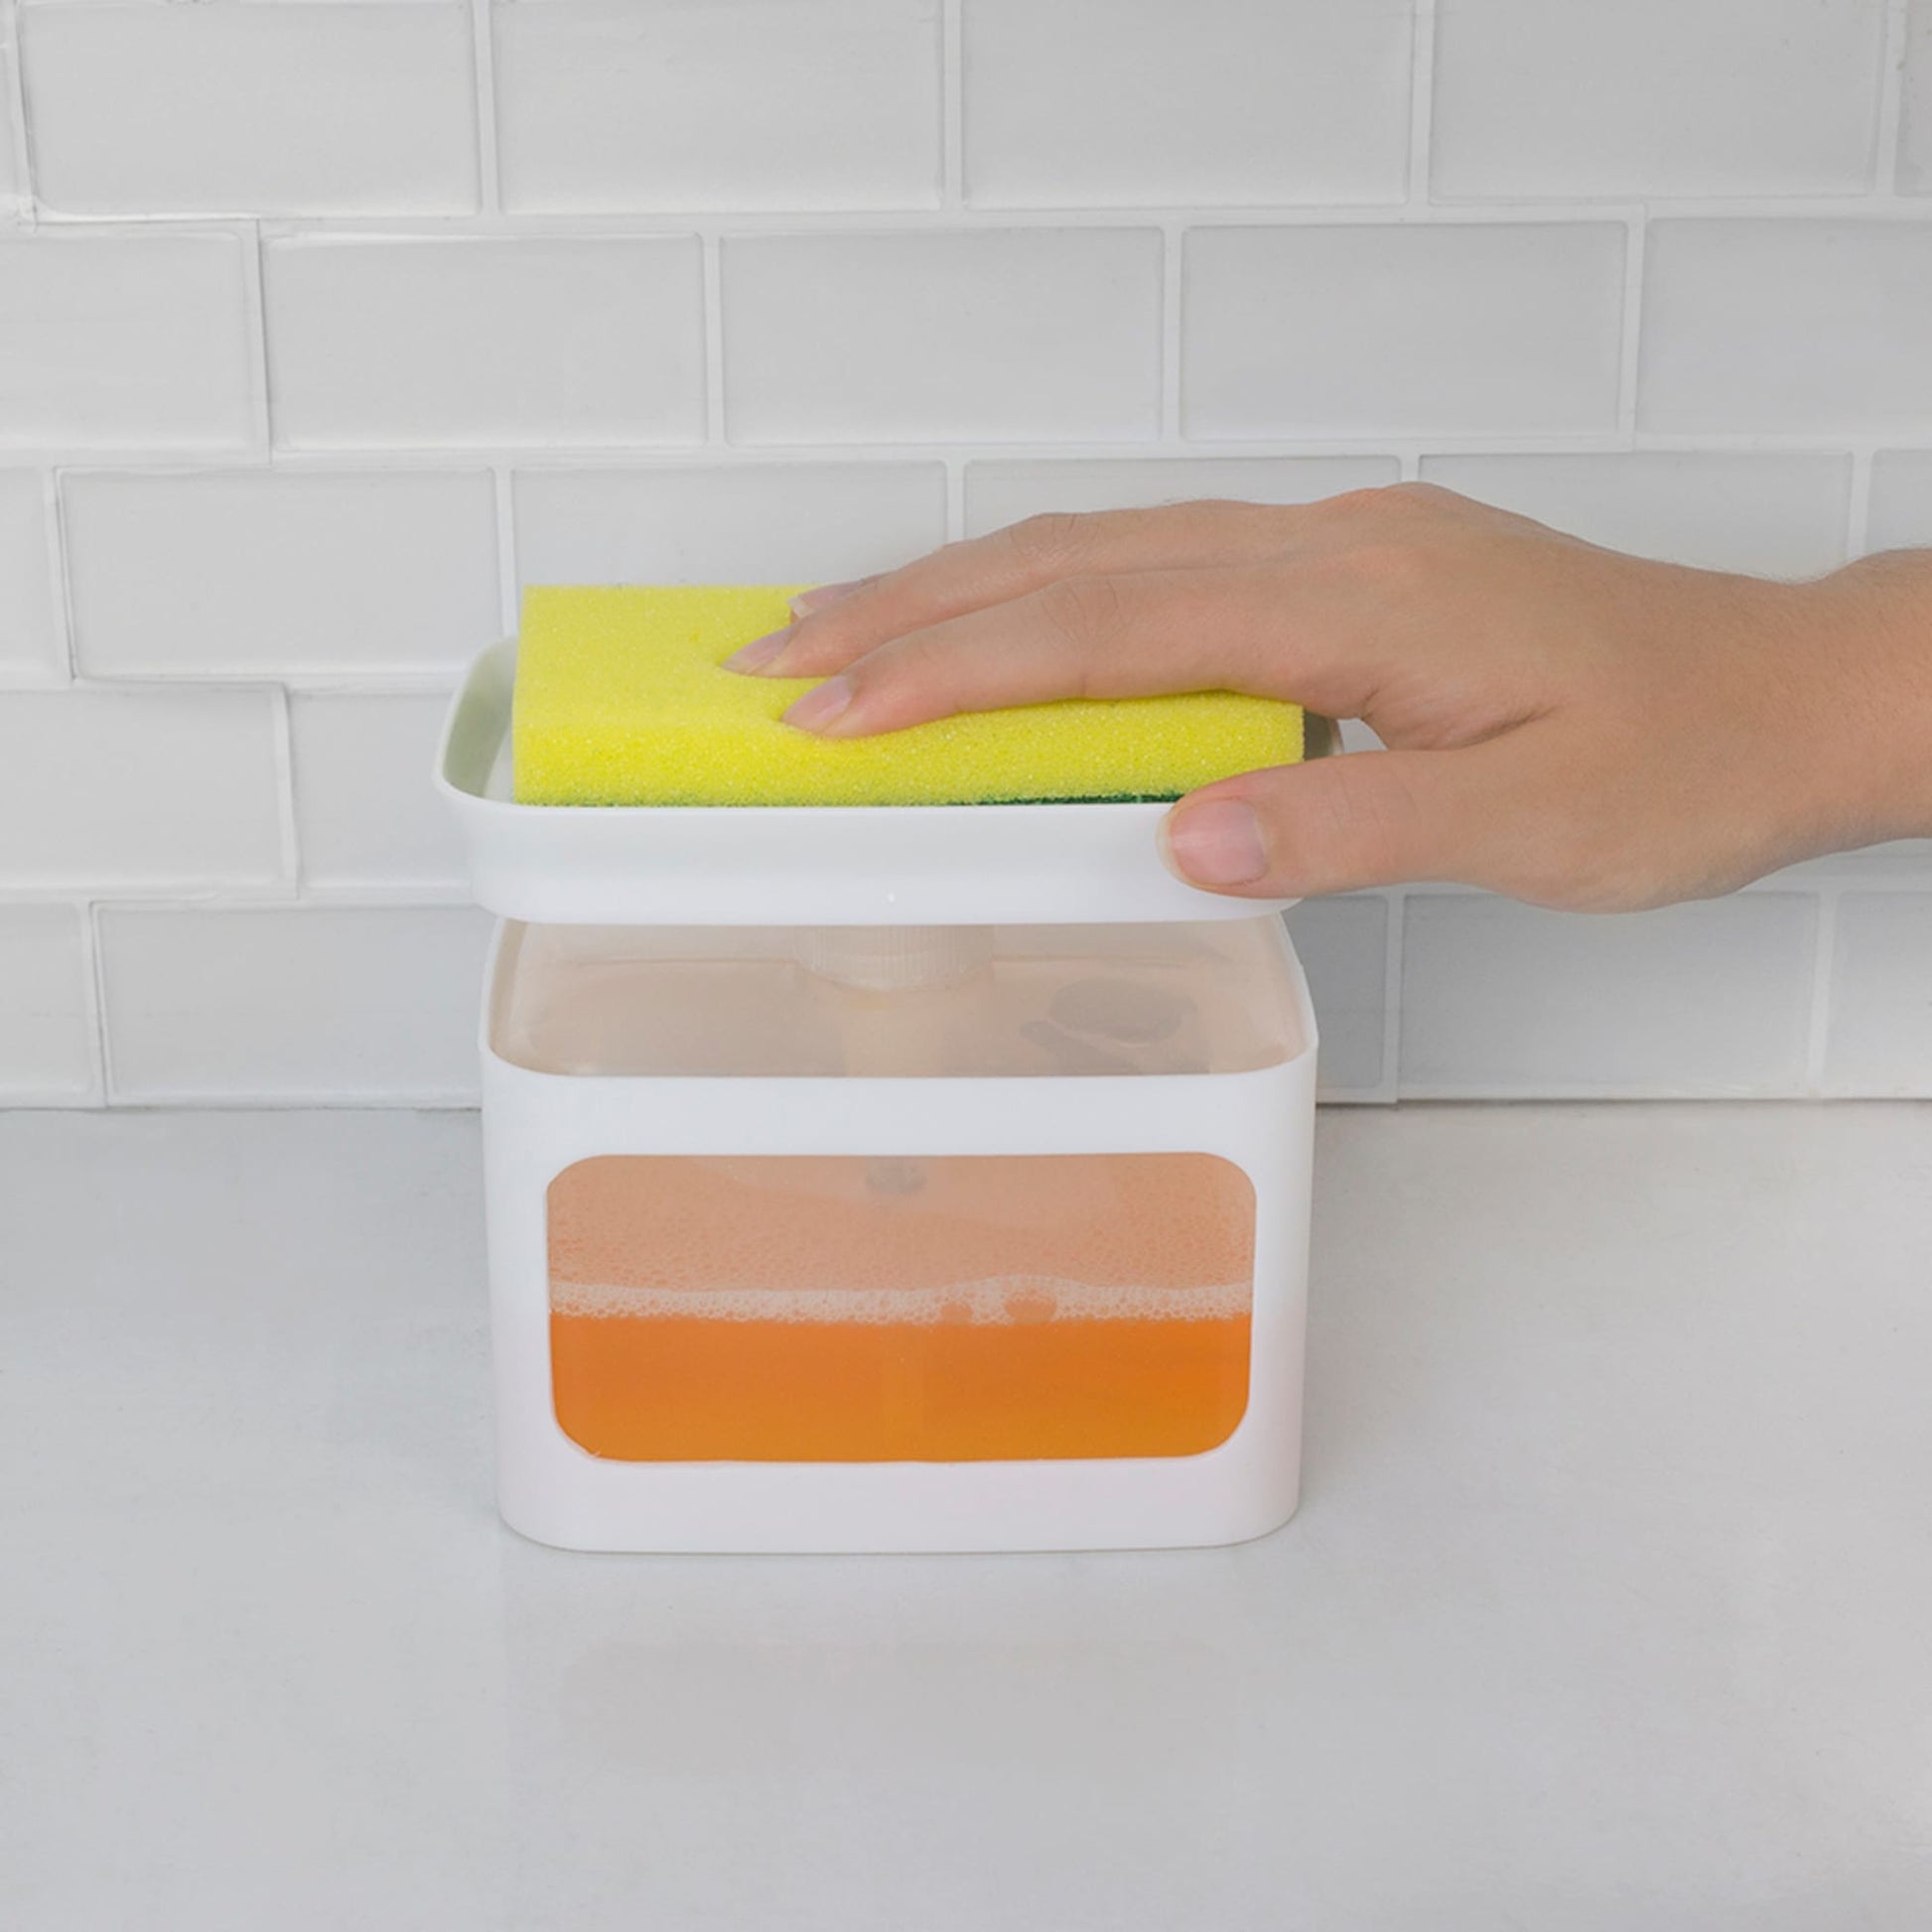 HIC Kitchen Soap Dispensing Sponge Holder with Sponge